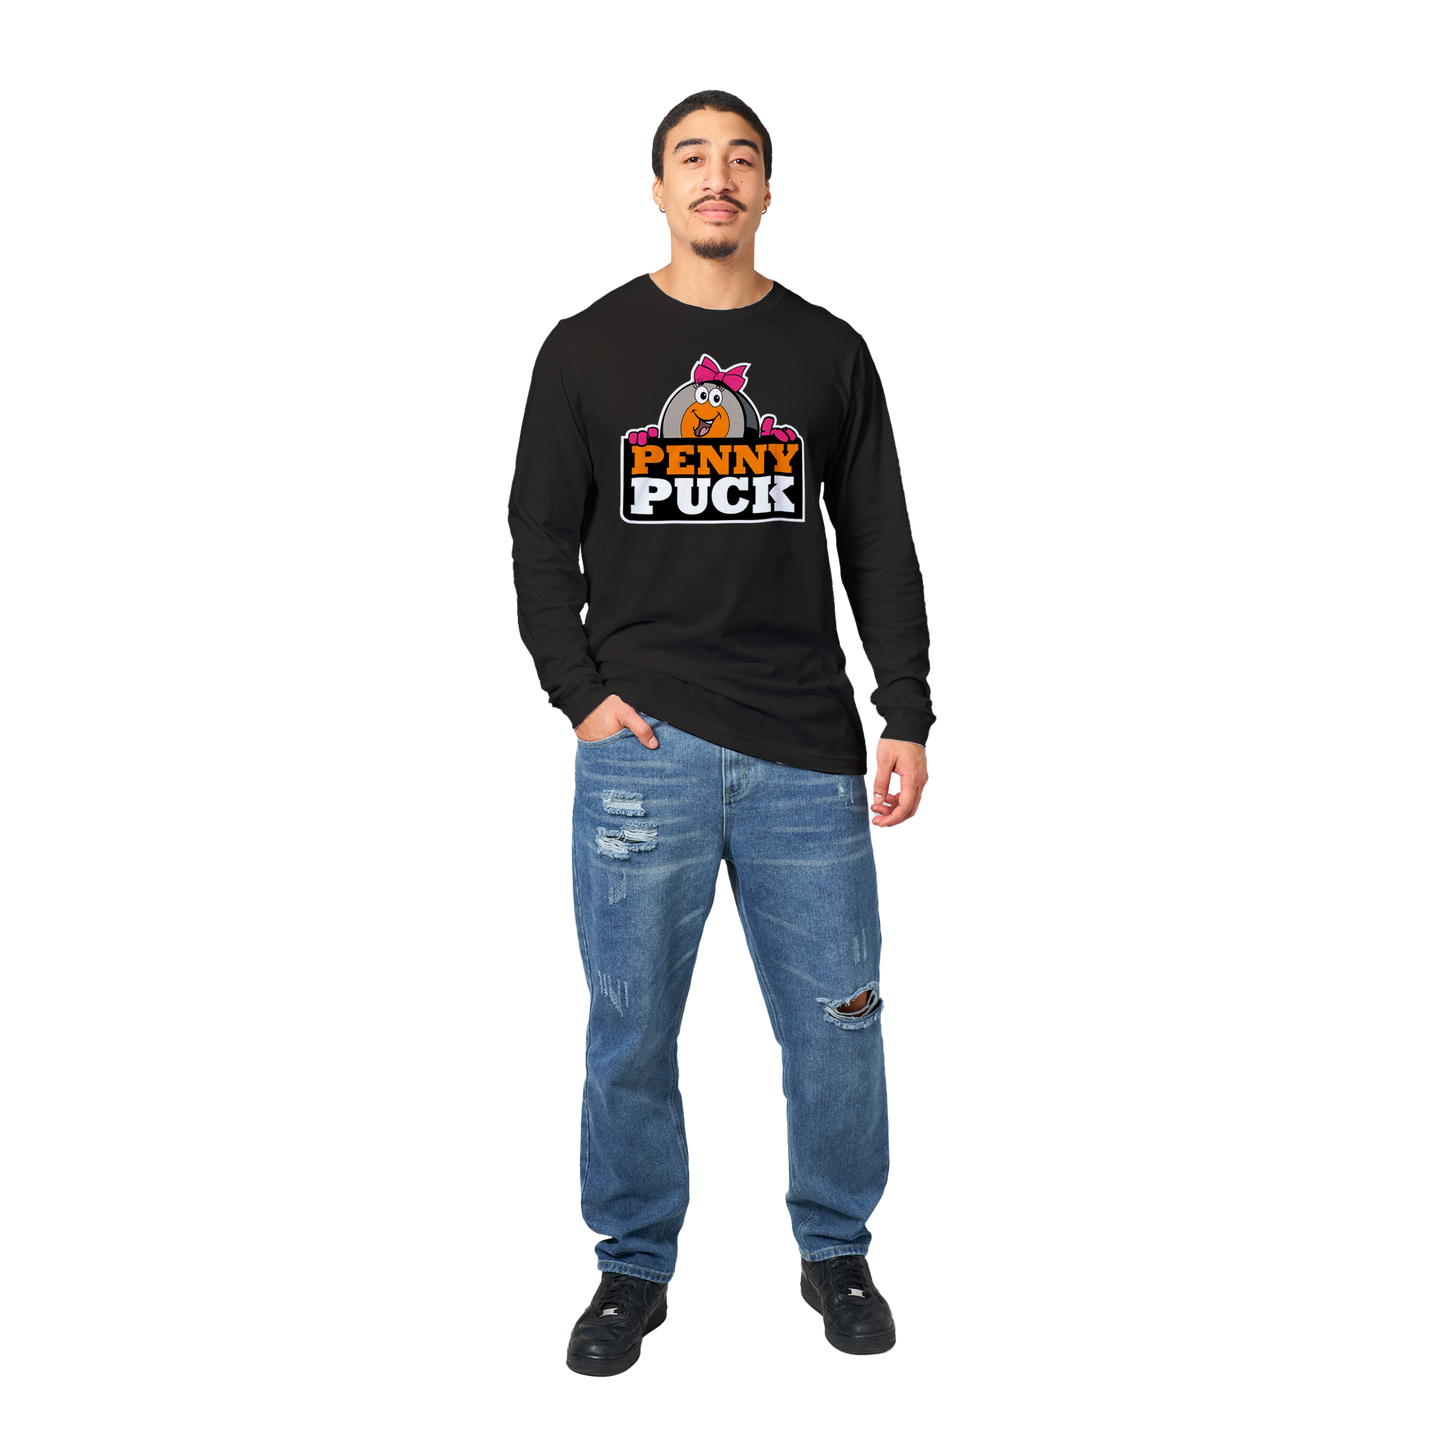 Penny Puck Peek Premium Mens Longsleeve T-shirt